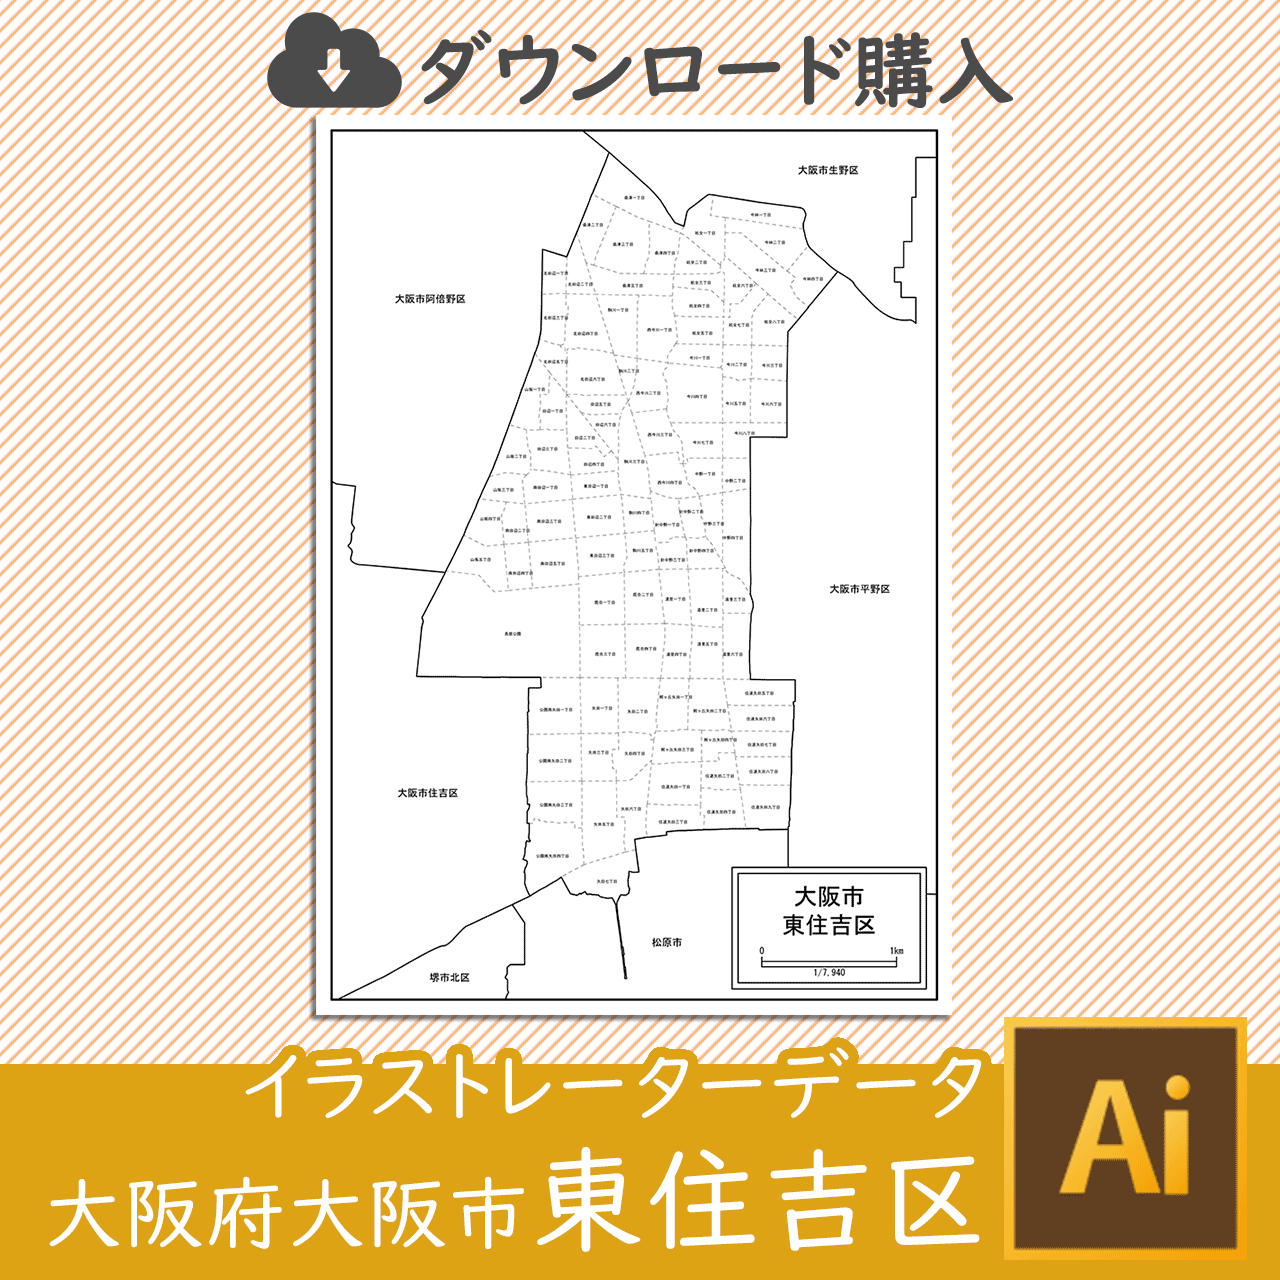 大阪市東住吉区のaiデータのサムネイル画像